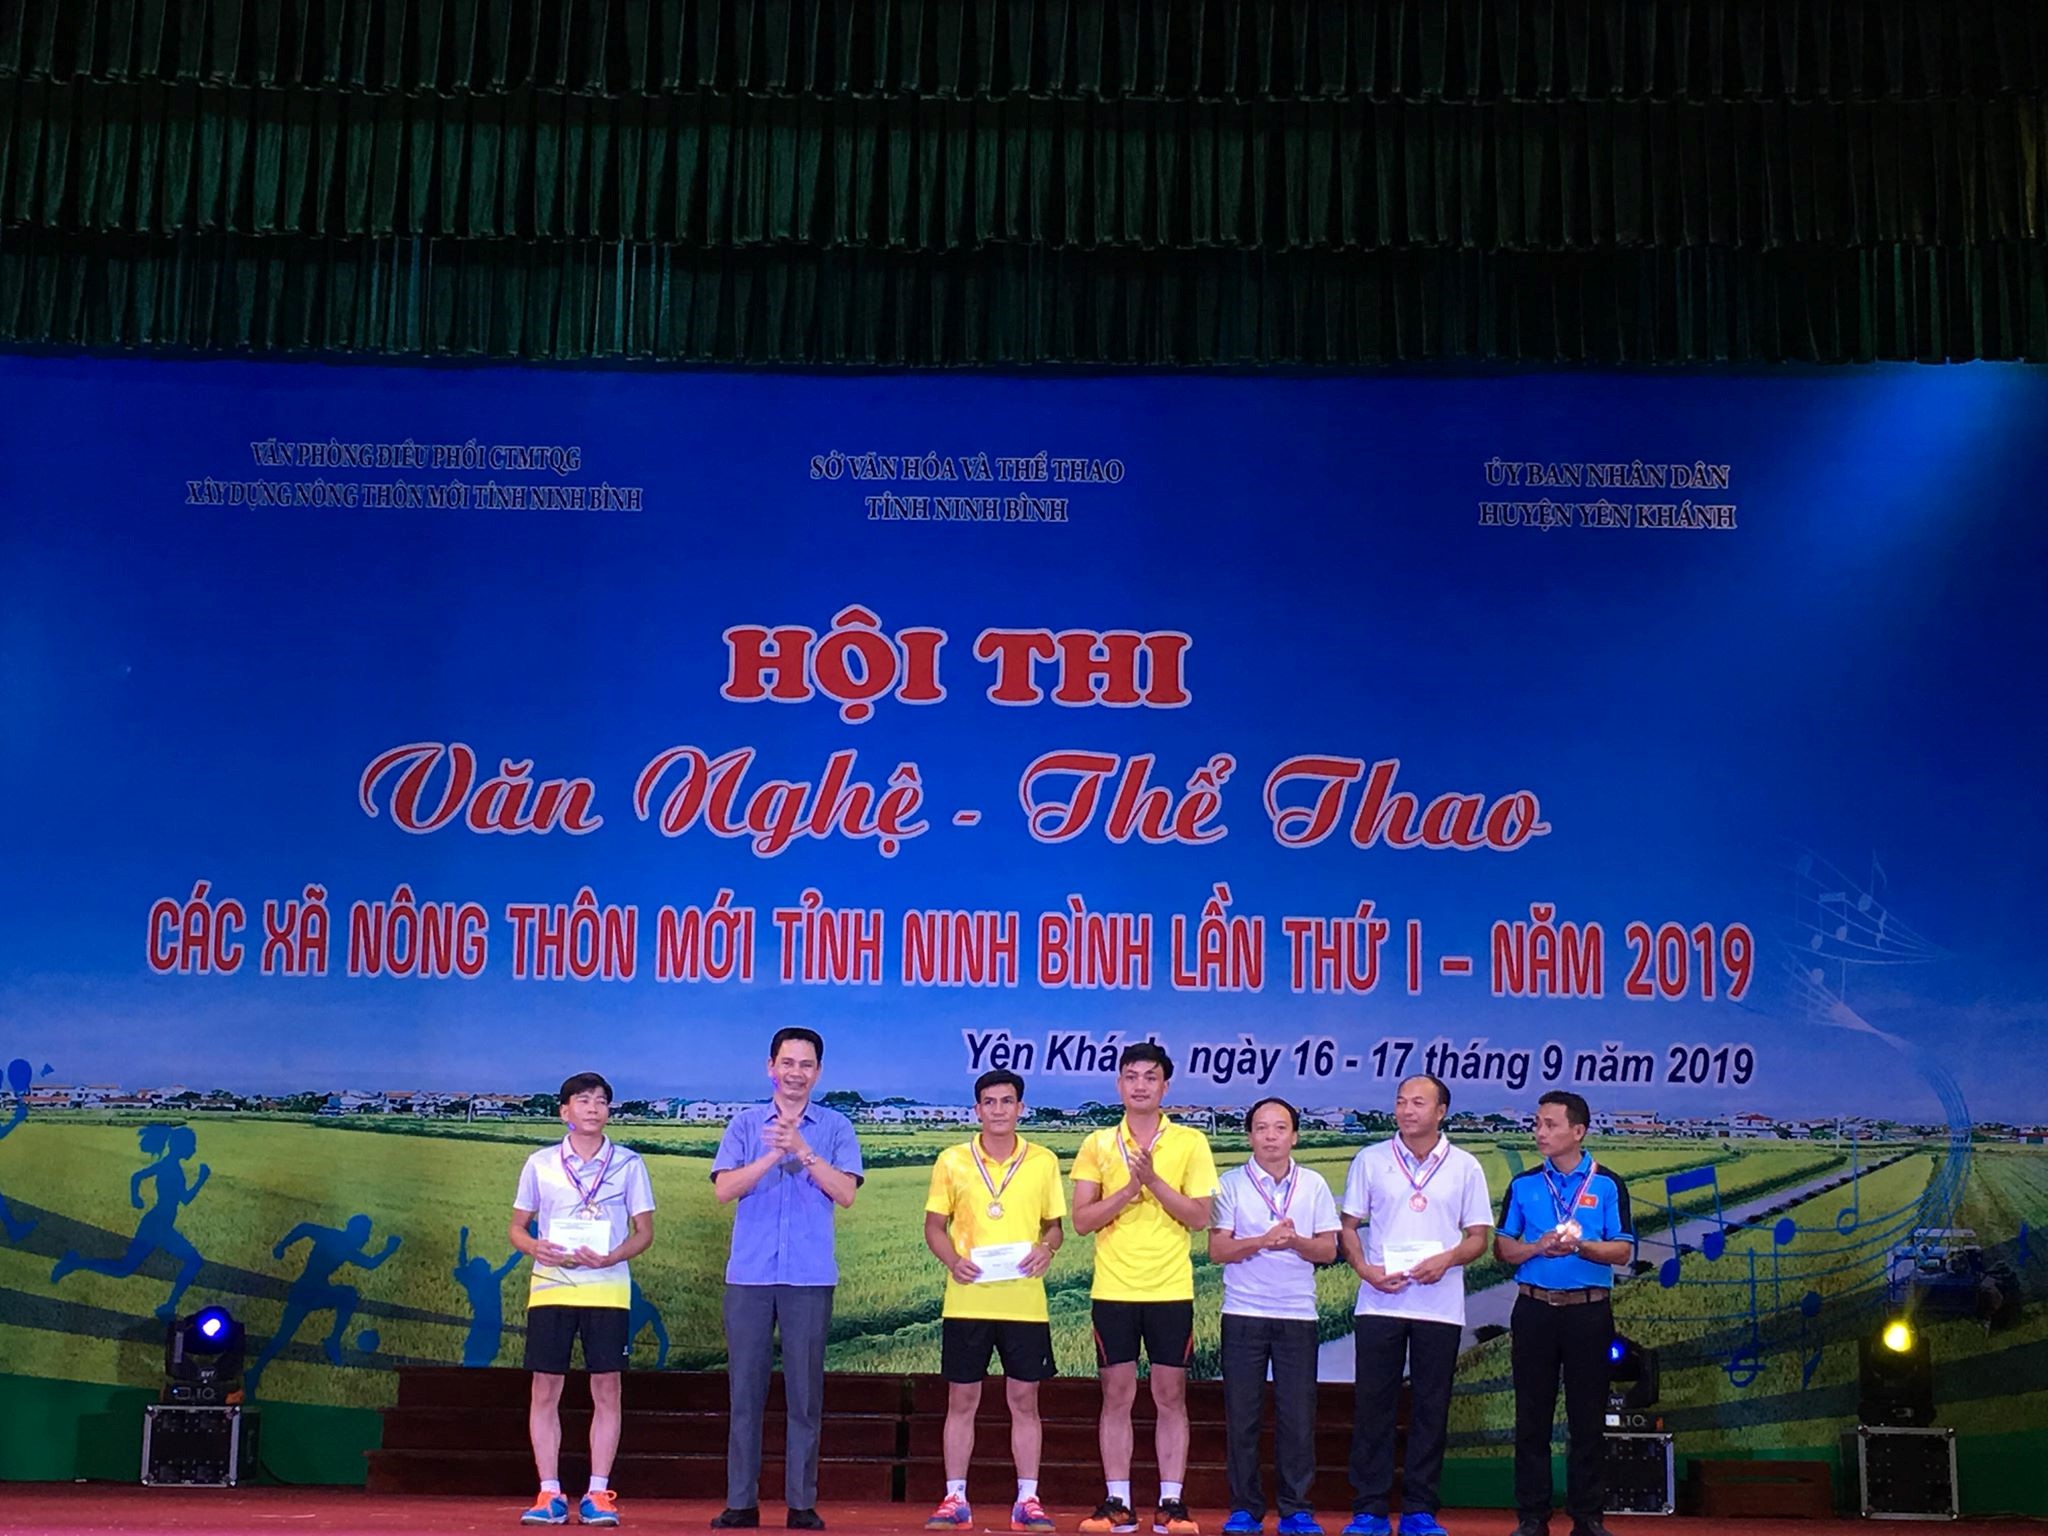 Hội thi Văn nghệ - Thể thao các xã nông thôn mới tỉnh Ninh Bình lần thứ I – năm 2019.